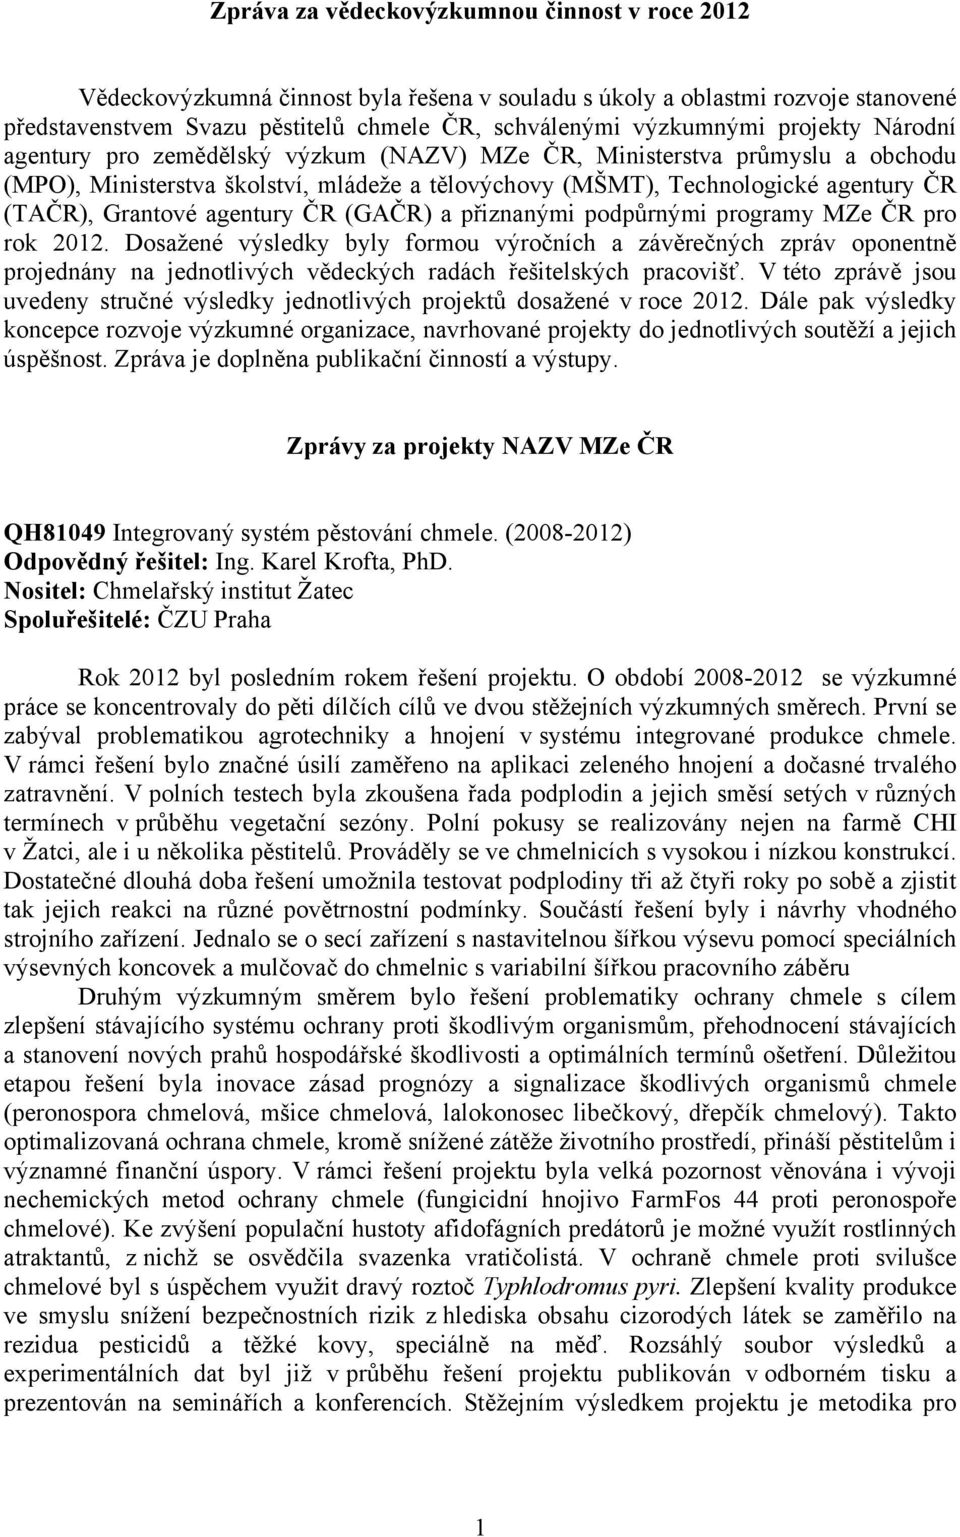 agentury ČR (GAČR) a přiznanými podpůrnými programy MZe ČR pro rok 2012.